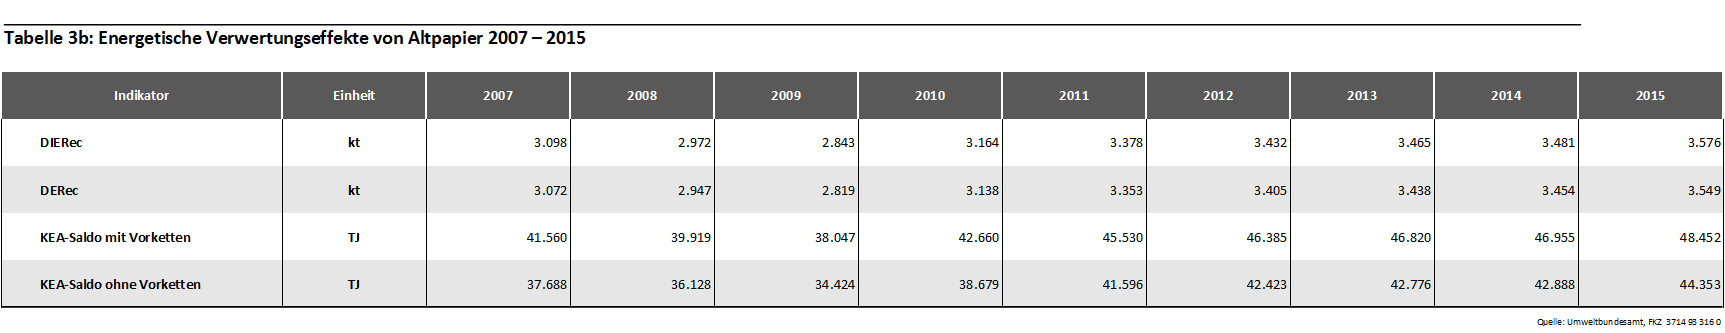 Tabelle 3b: Energetische Verwertungseffekte von Altpapier 2007-2015